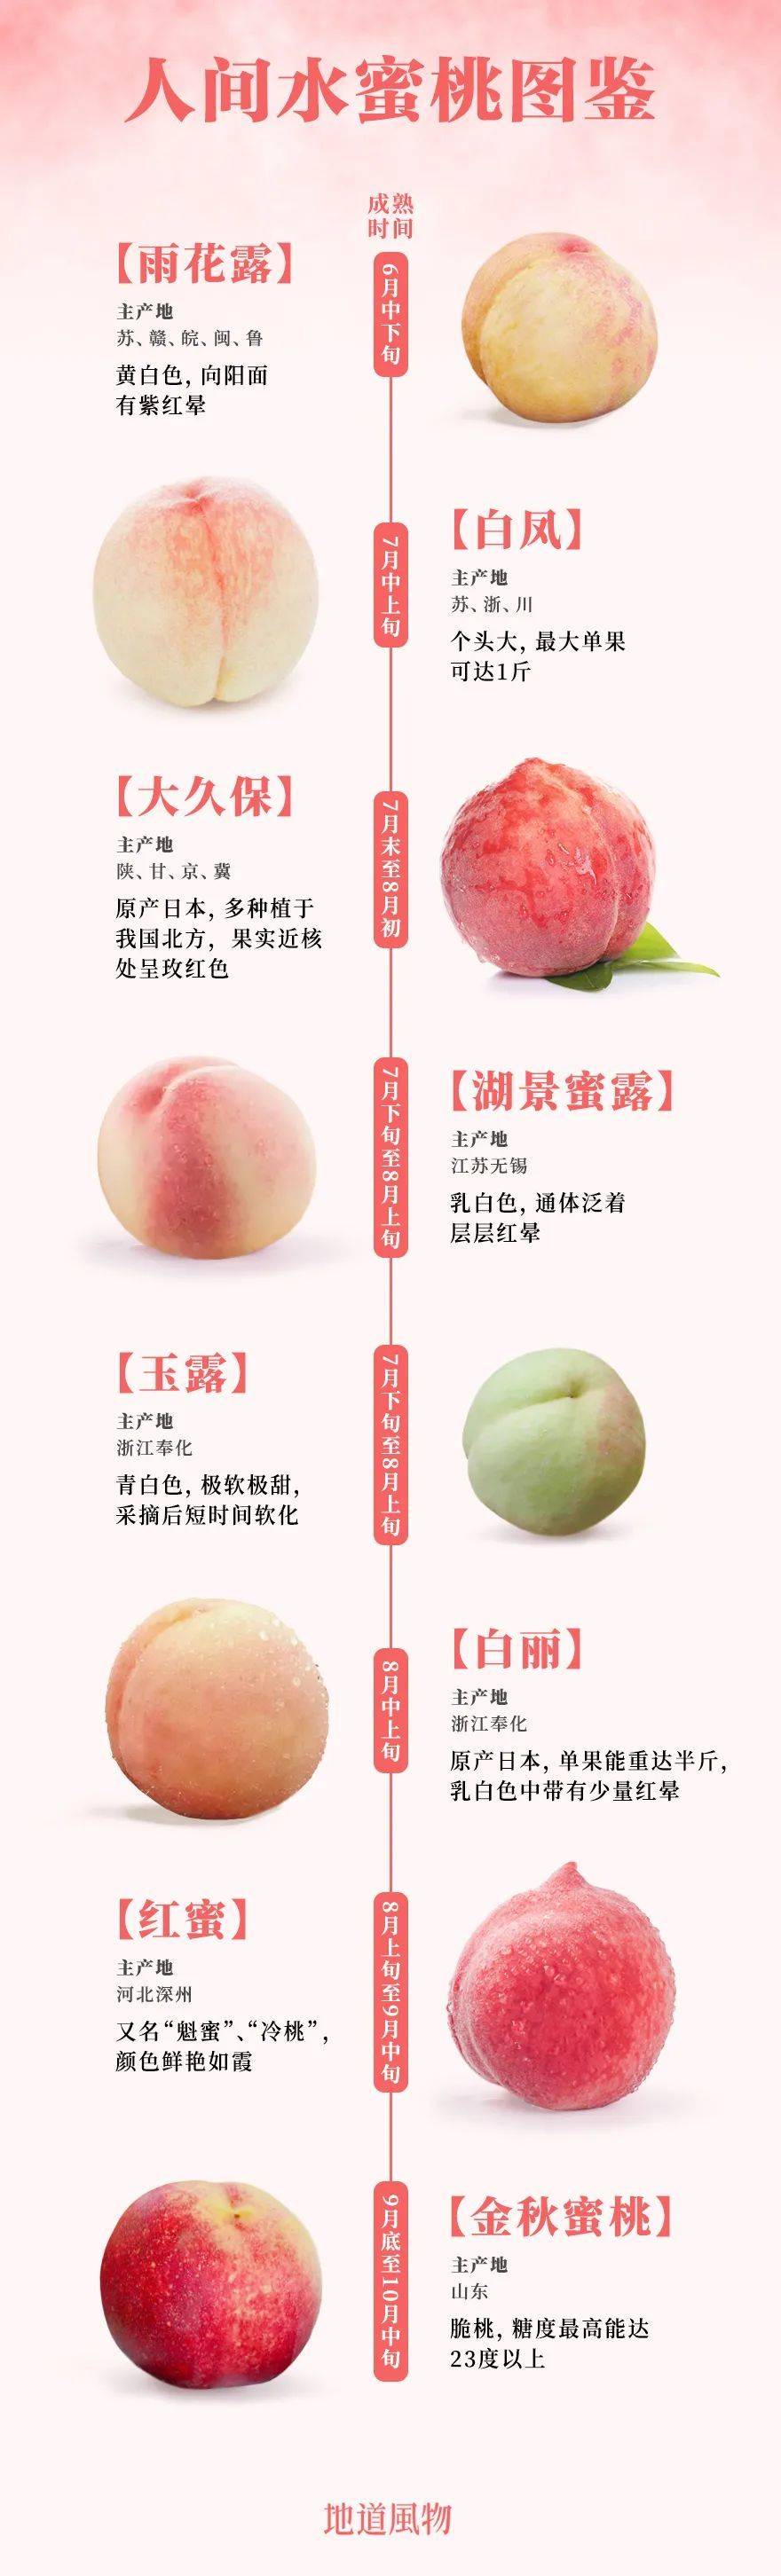 ▲如今市面上部分知名的蜜桃和水蜜桃（其中金秋蜜桃为脆桃）。设计/刘航